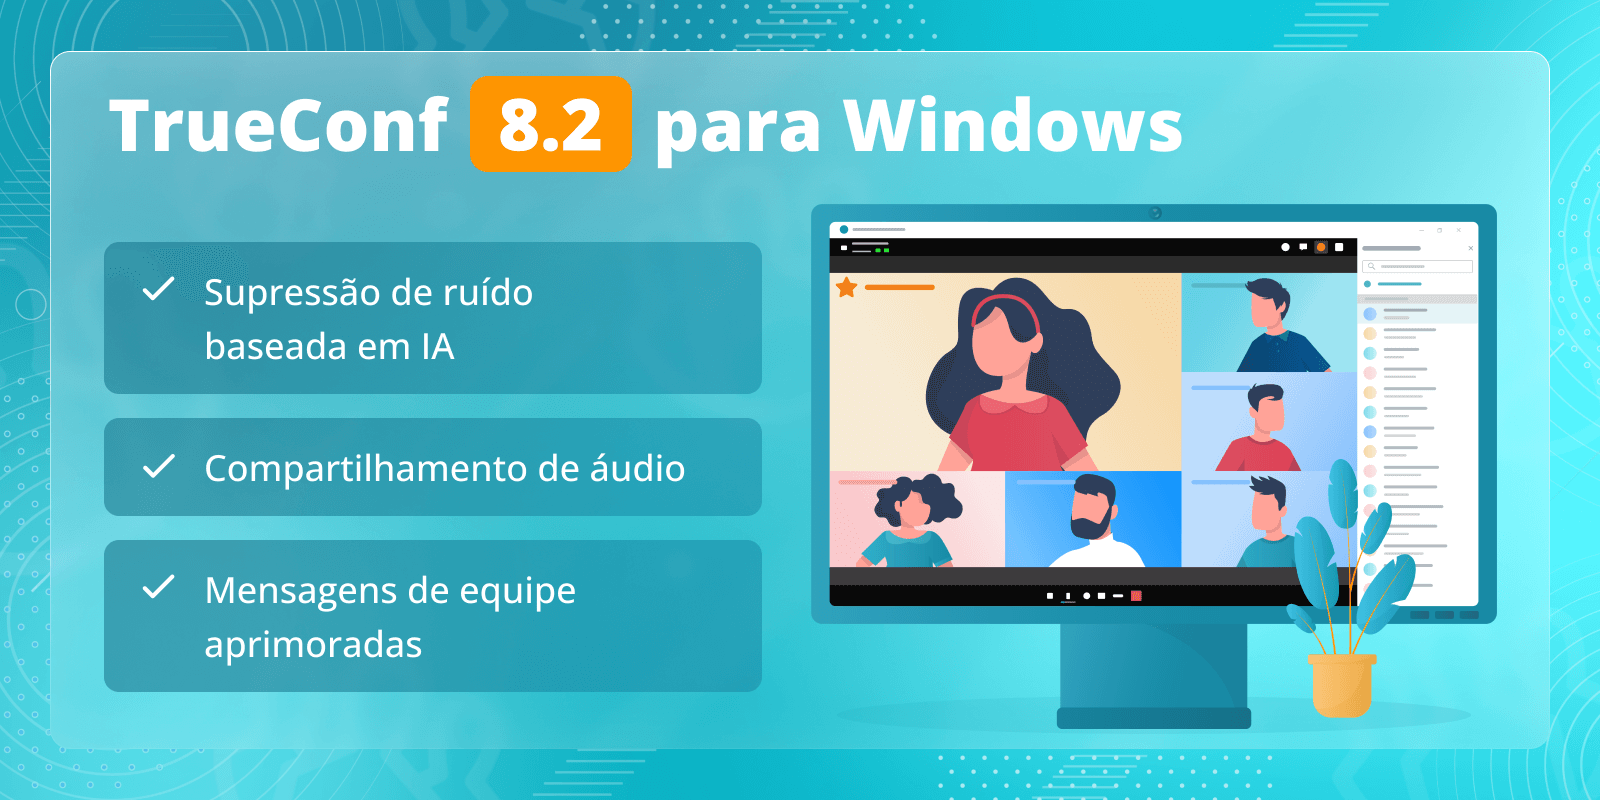 TrueConf 8.2 para Windows: supressão de ruído baseada em IA, mensagens de equipe aprimoradas e compartilhamento de áudio 1